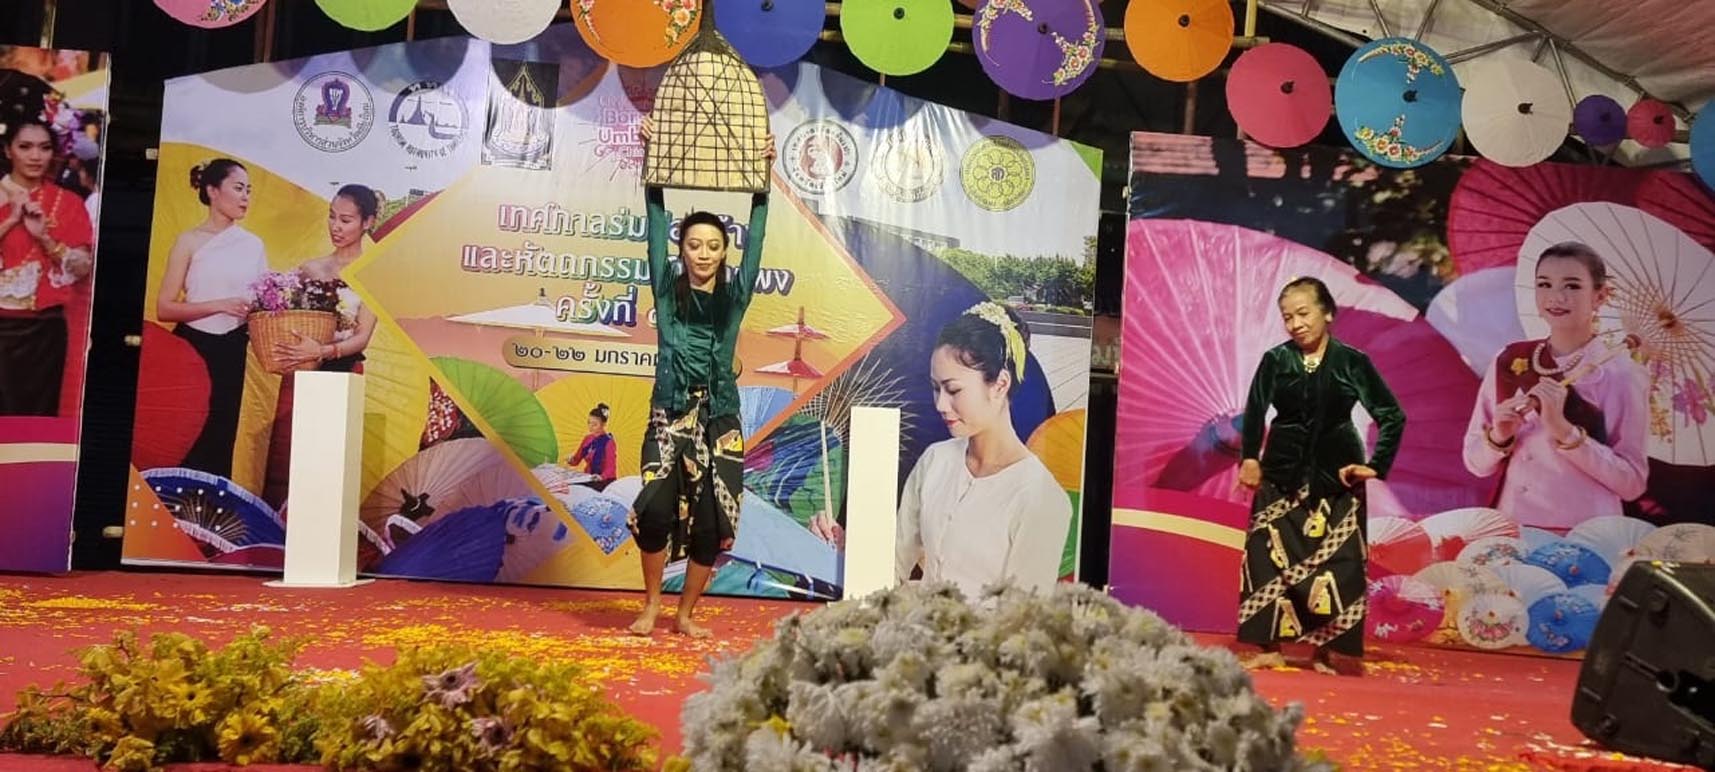 Keren! Bundengan dan Lengger Wonosobo Tampil Memiakau di Borsang Umbrella Festival Thailand